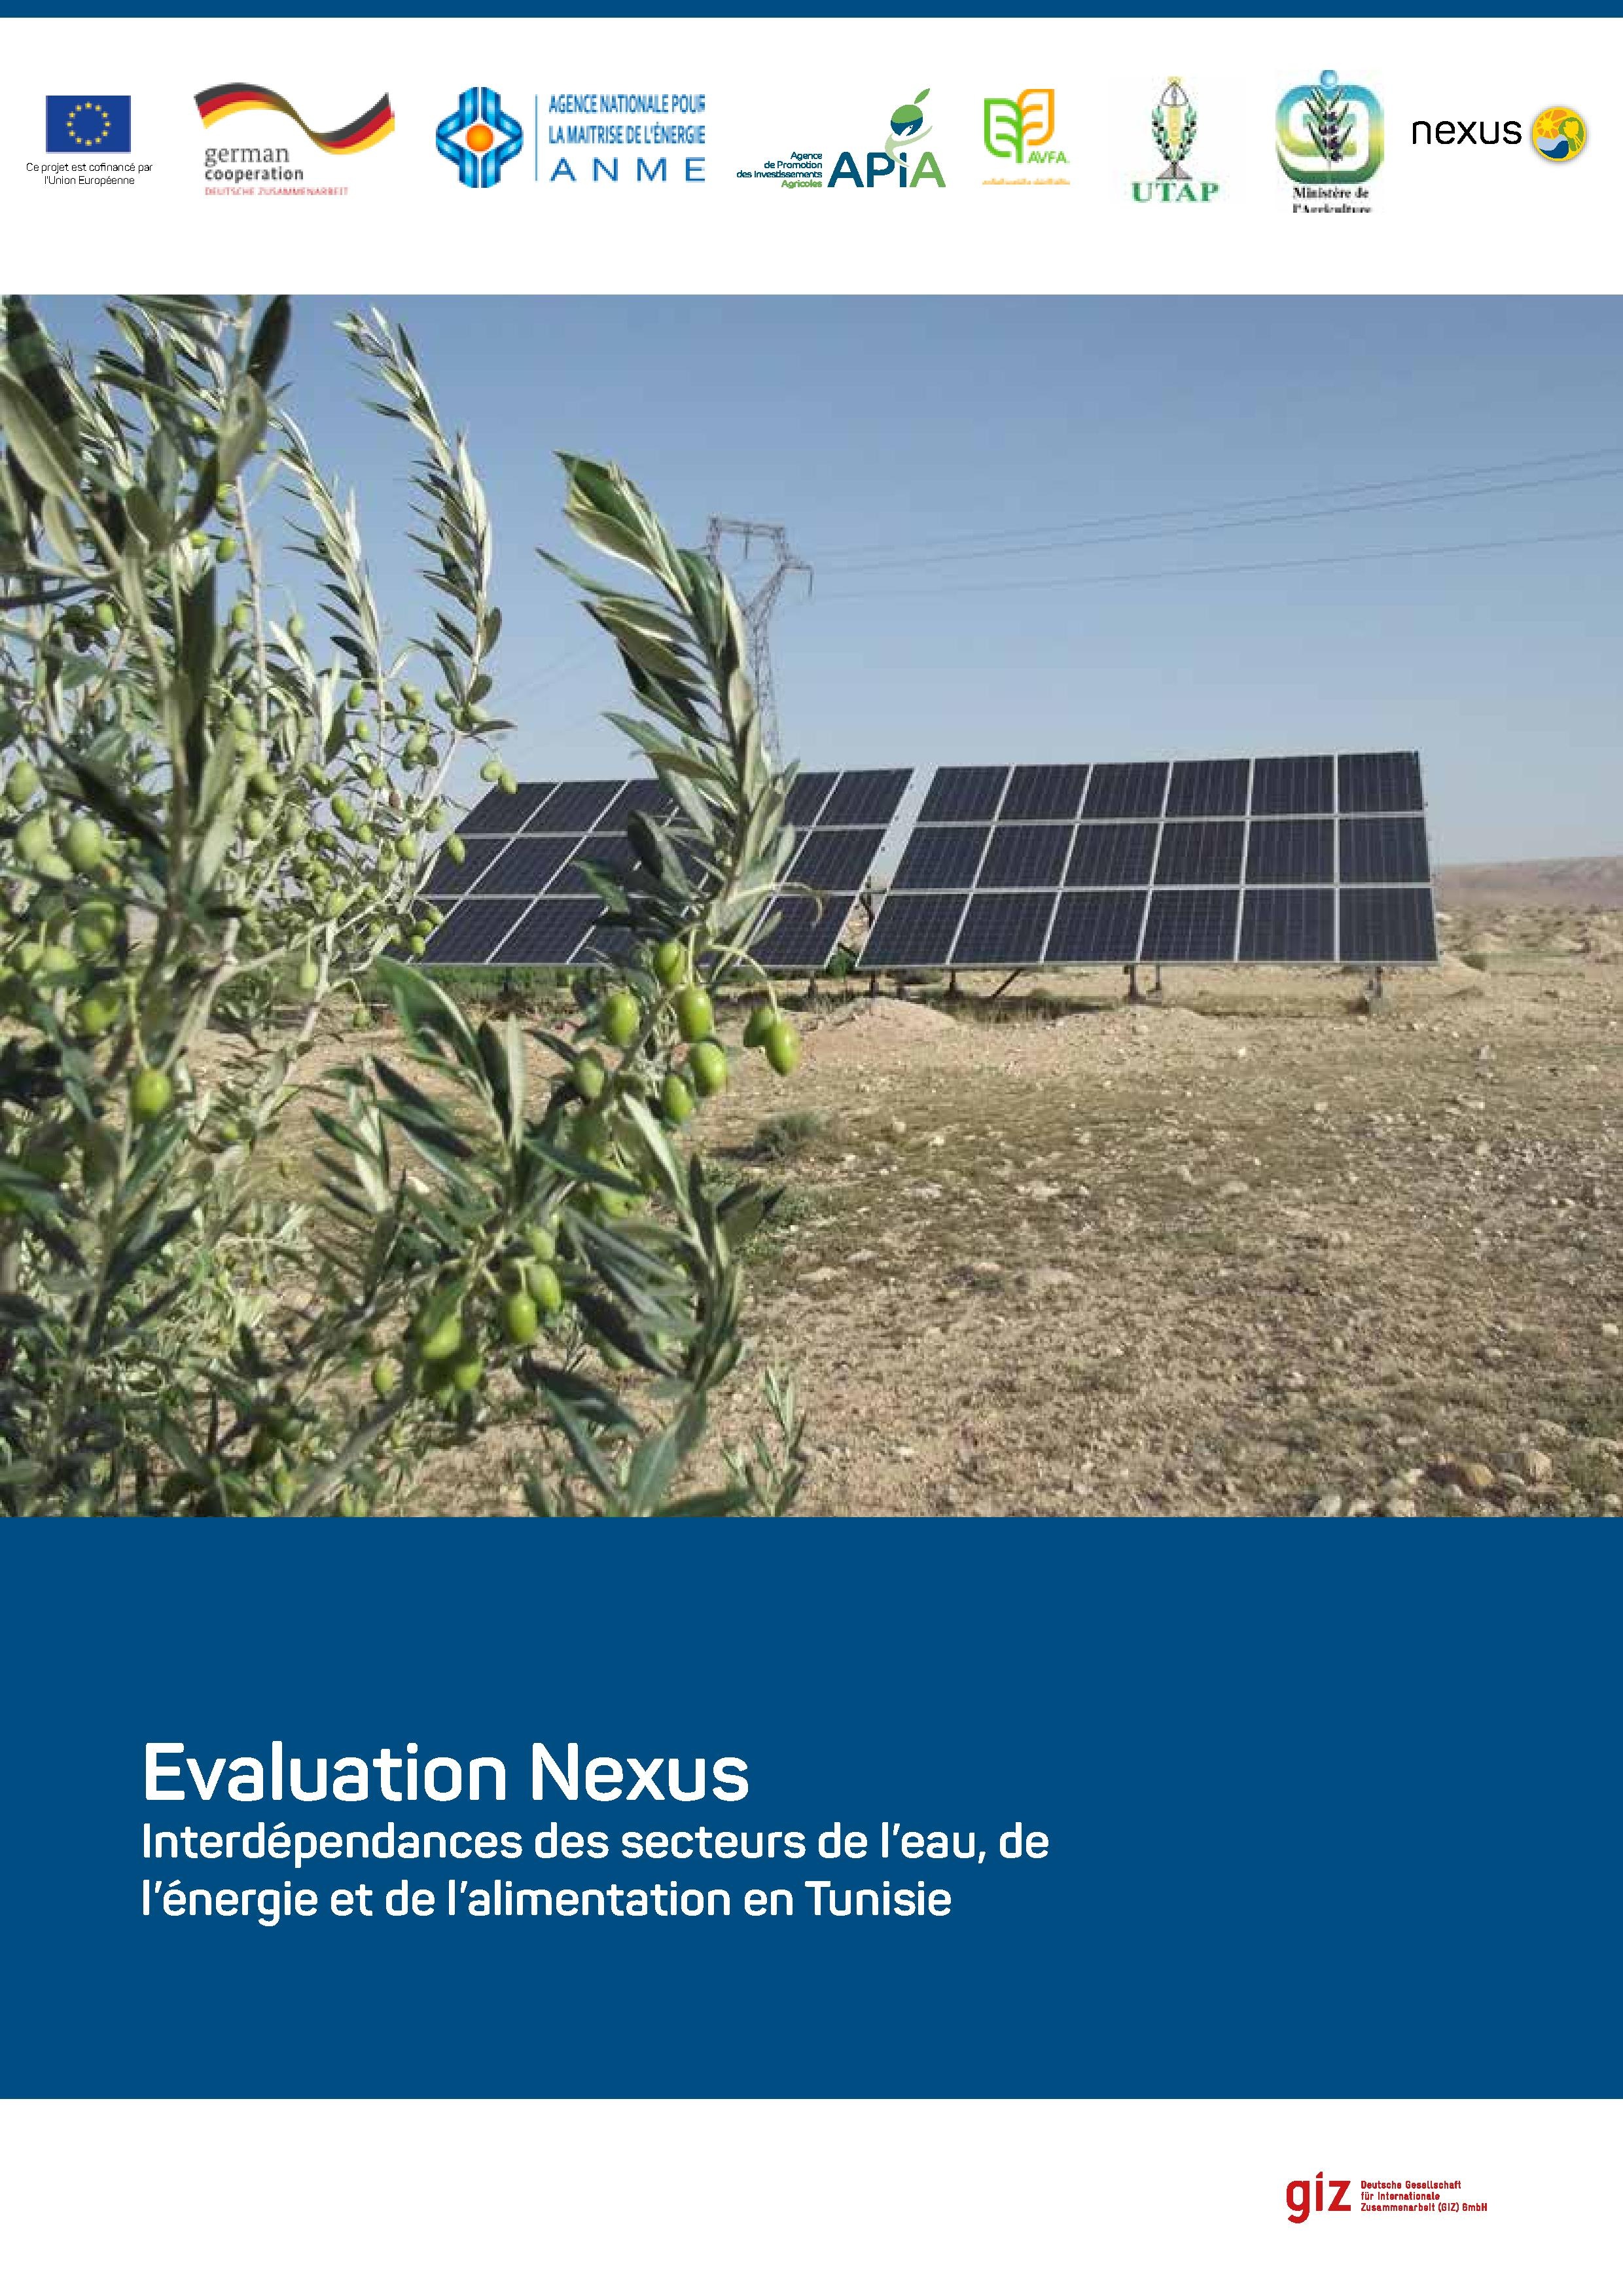 https://energypedia.info/wiki/File:Nexus_Assessment_Tunisie.pdf